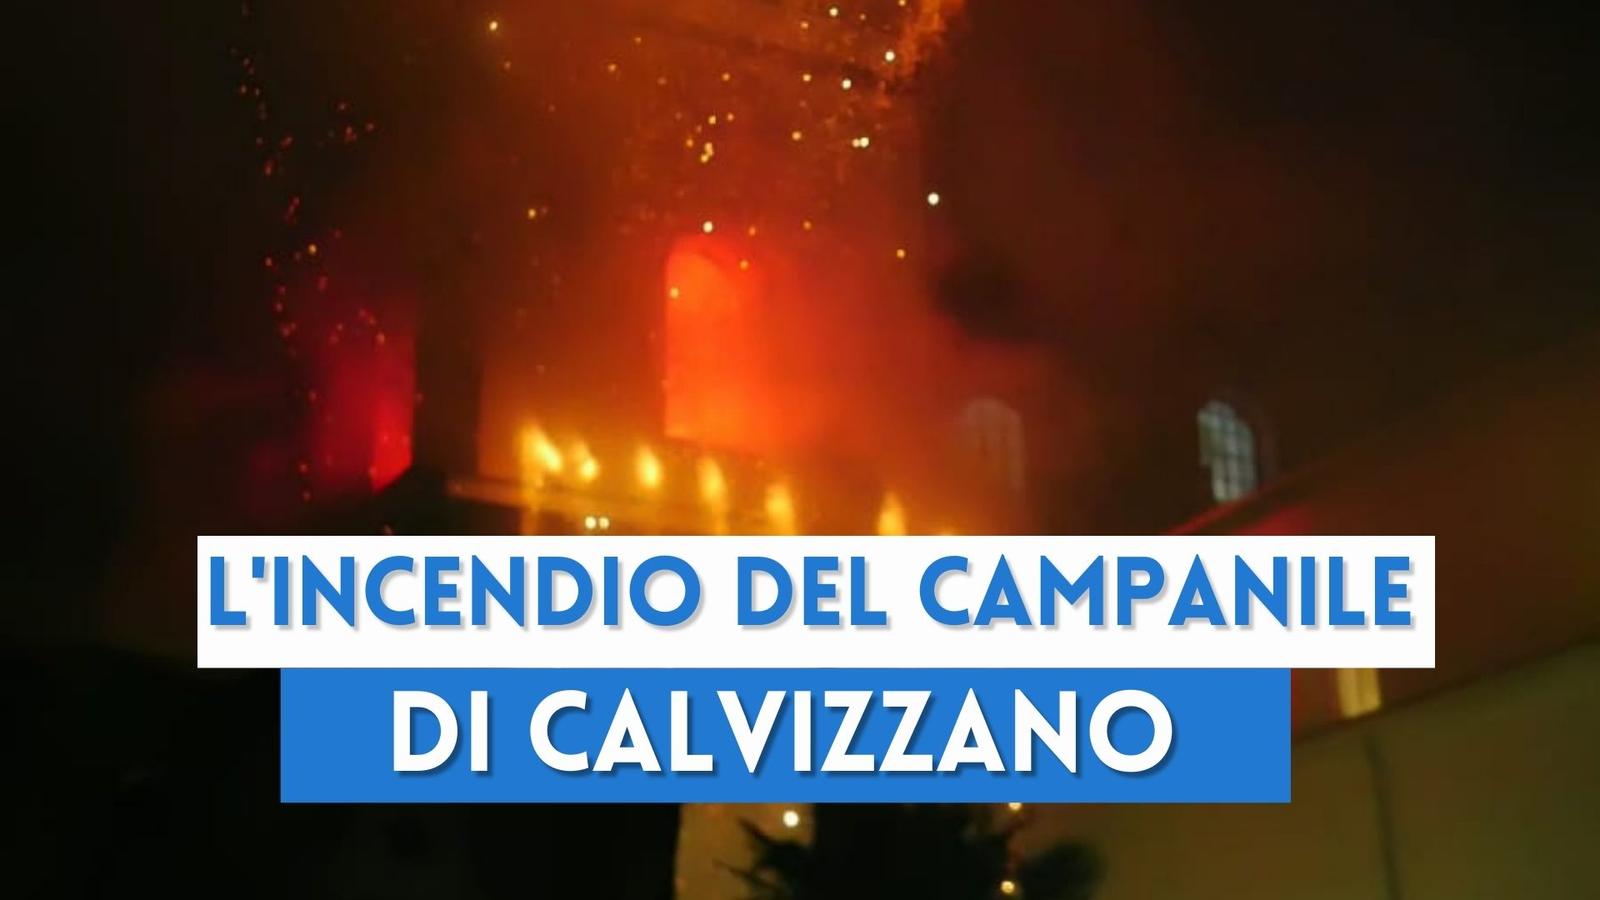 L'incendio del campanile di Calvizzano